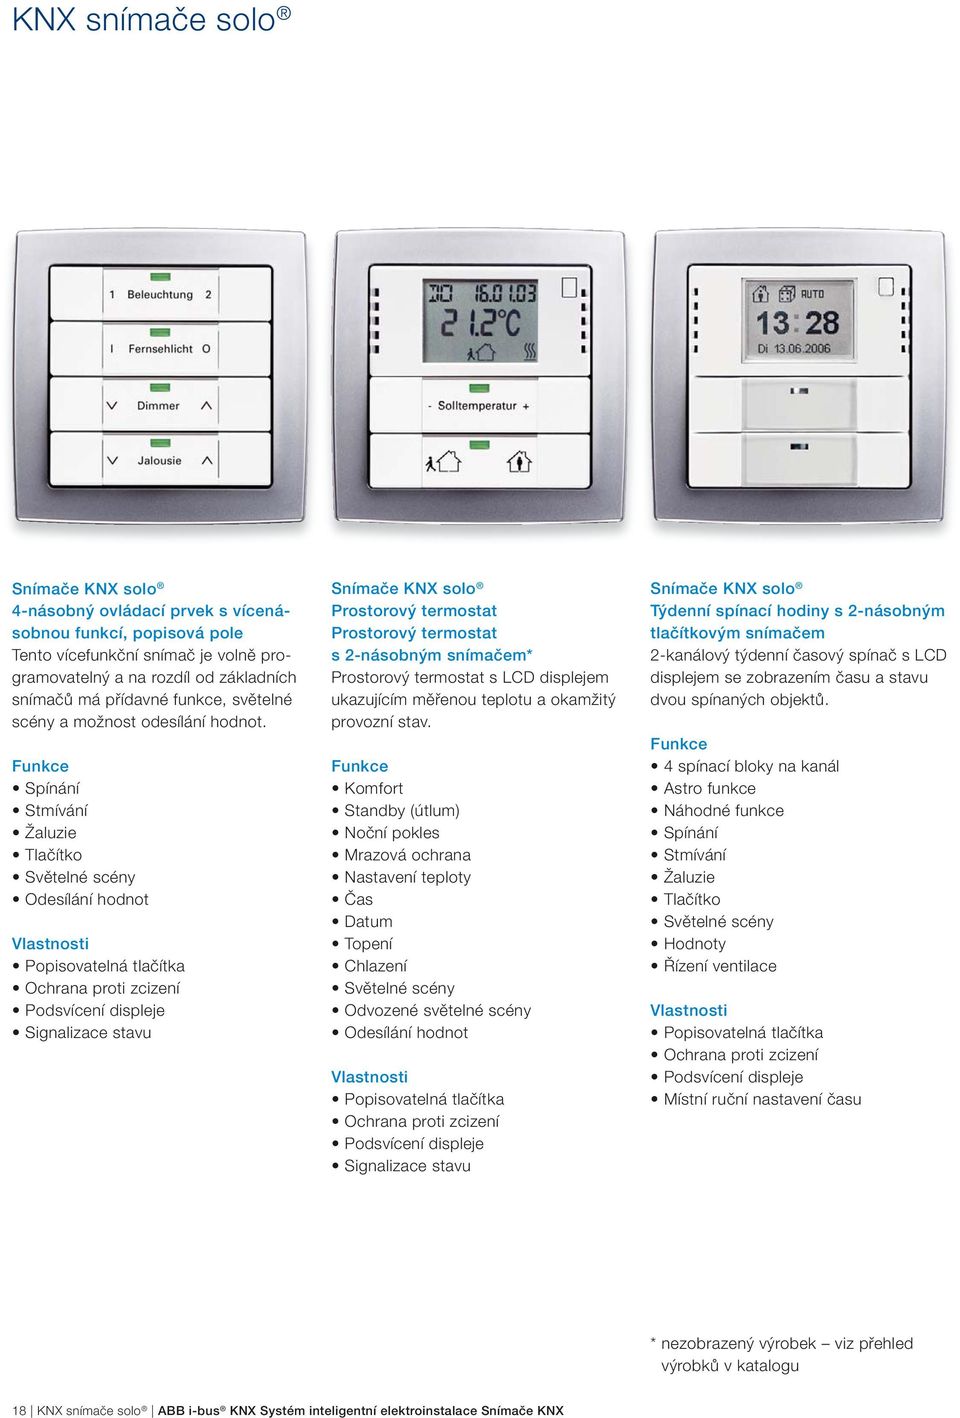 Tlačítko Odesílání hodnot Popisovatelná tlačítka Podsvícení displeje Snímače KNX solo Prostorový termostat Prostorový termostat s 2-násobným snímačem* Prostorový termostat s LCD displejem ukazujícím